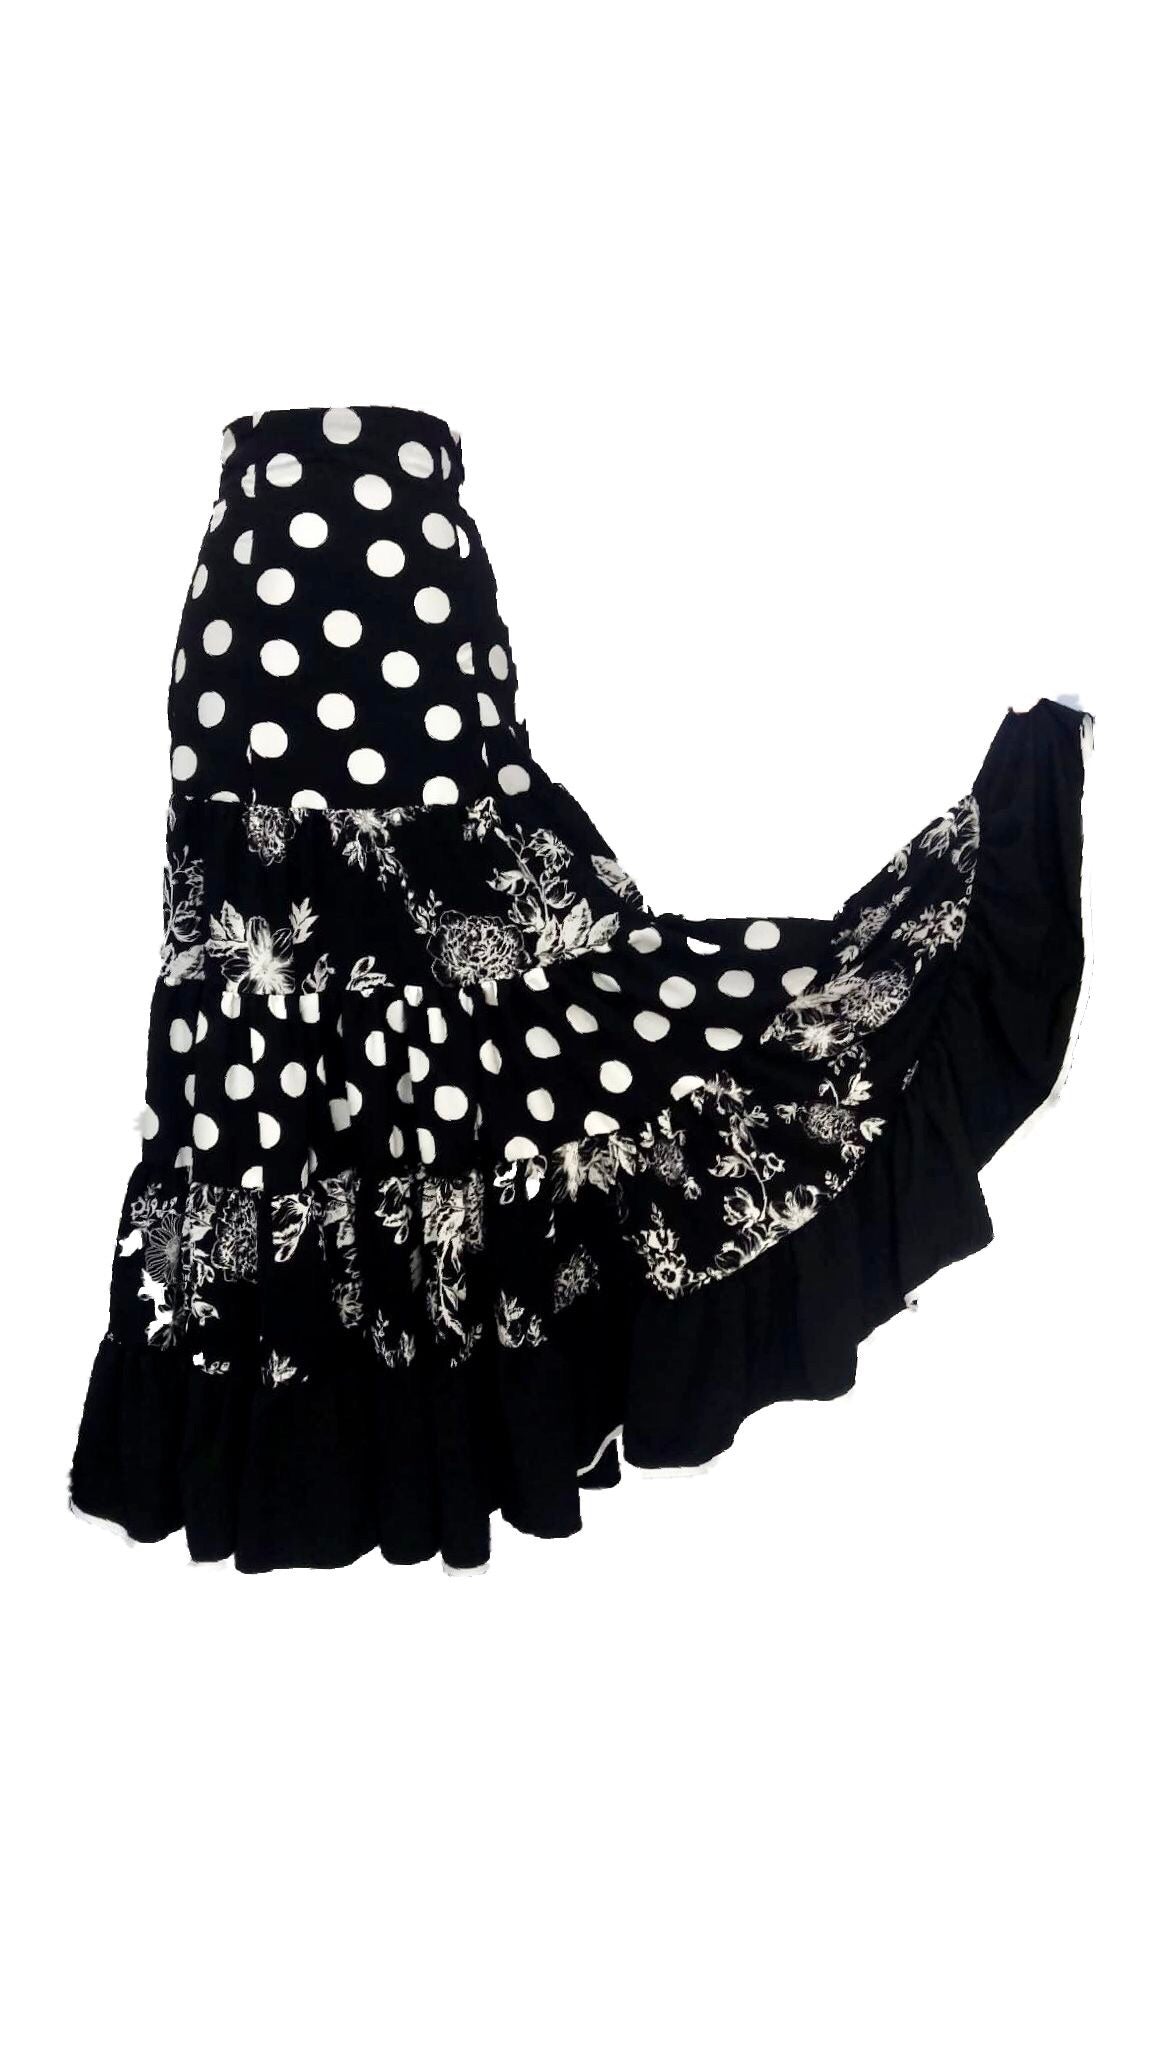 Faldas flamencas canasteras en crespón